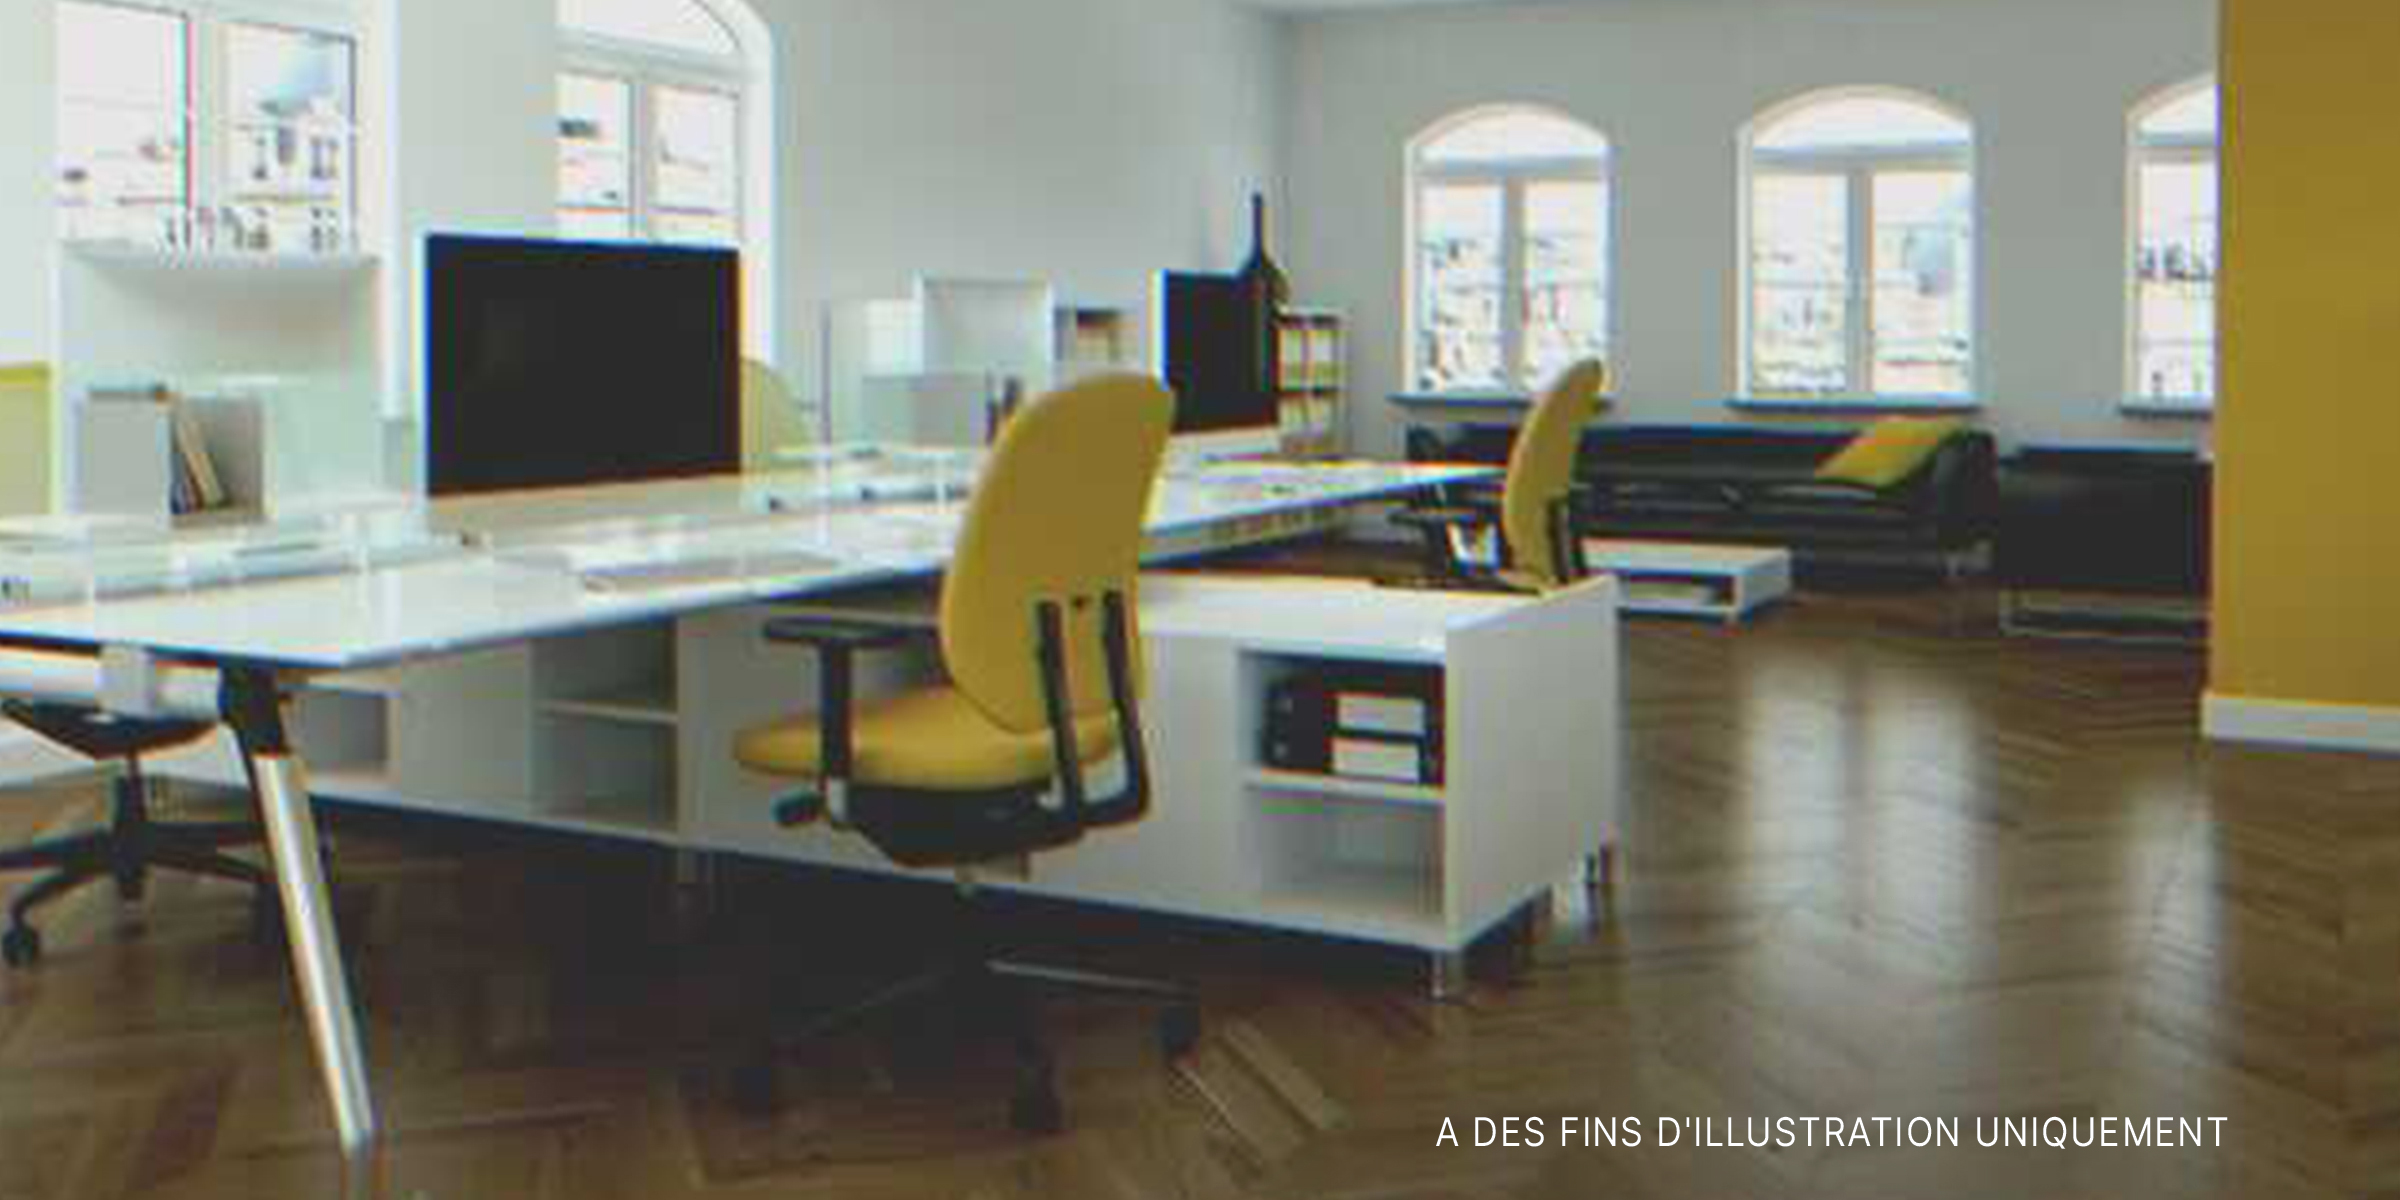 Un lieu de travail | Source : Shutterstock.com